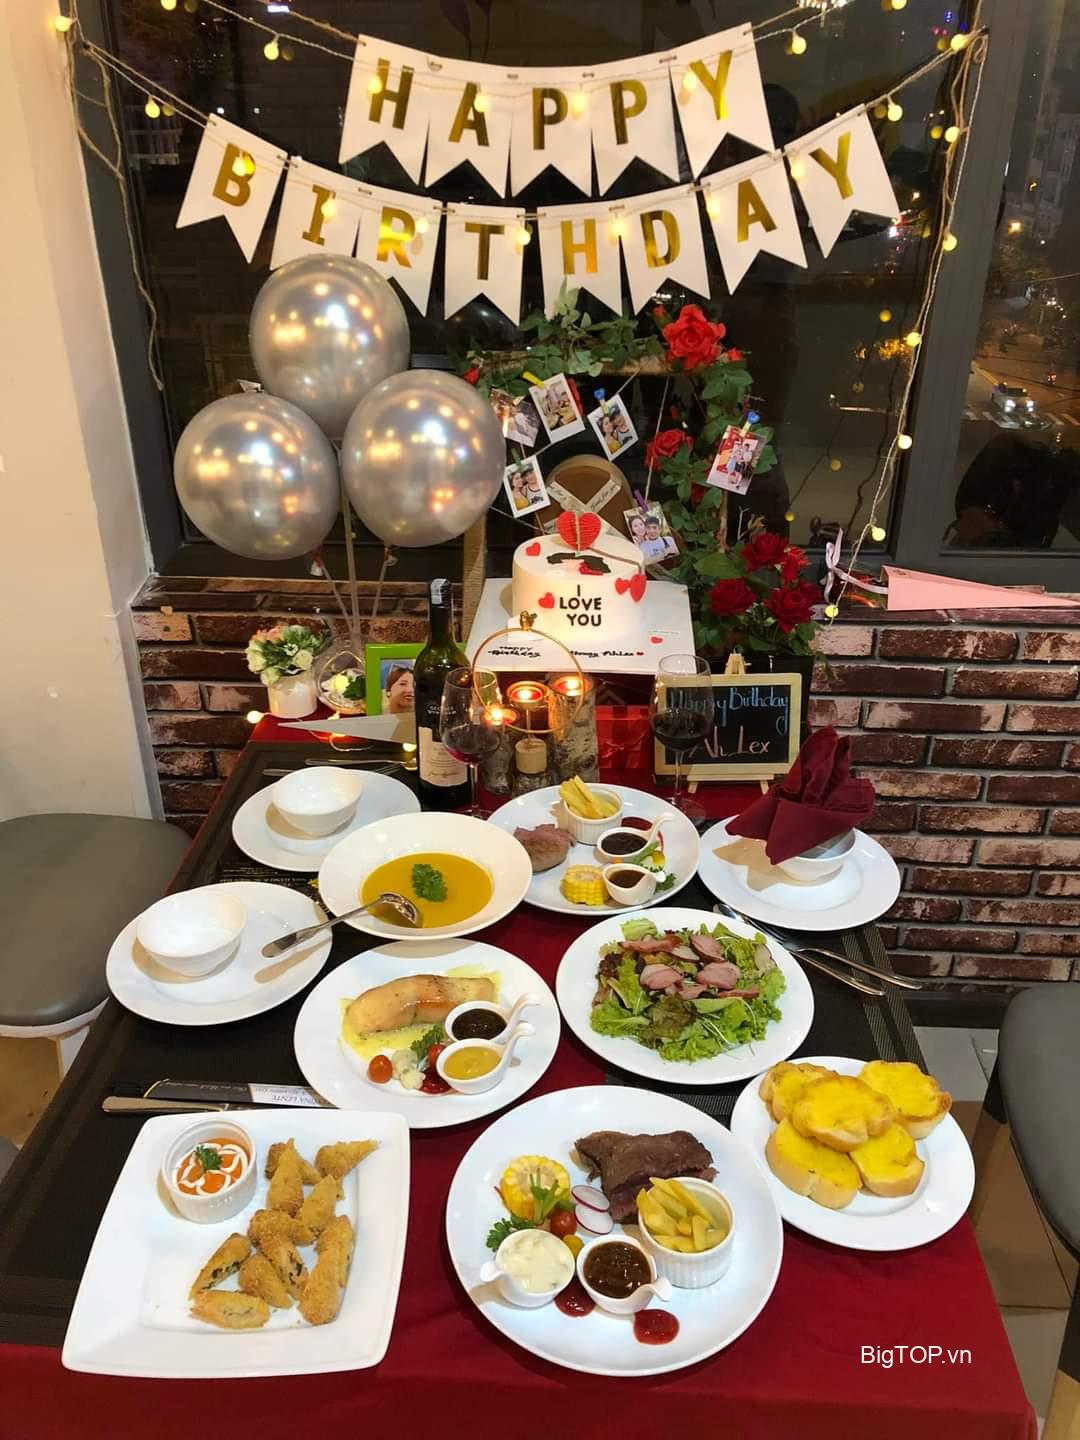 Top 8 Nhà hàng quán ăn tổ chức sinh nhật lý tưởng nhất tại Đà Lạt   AllTopvn